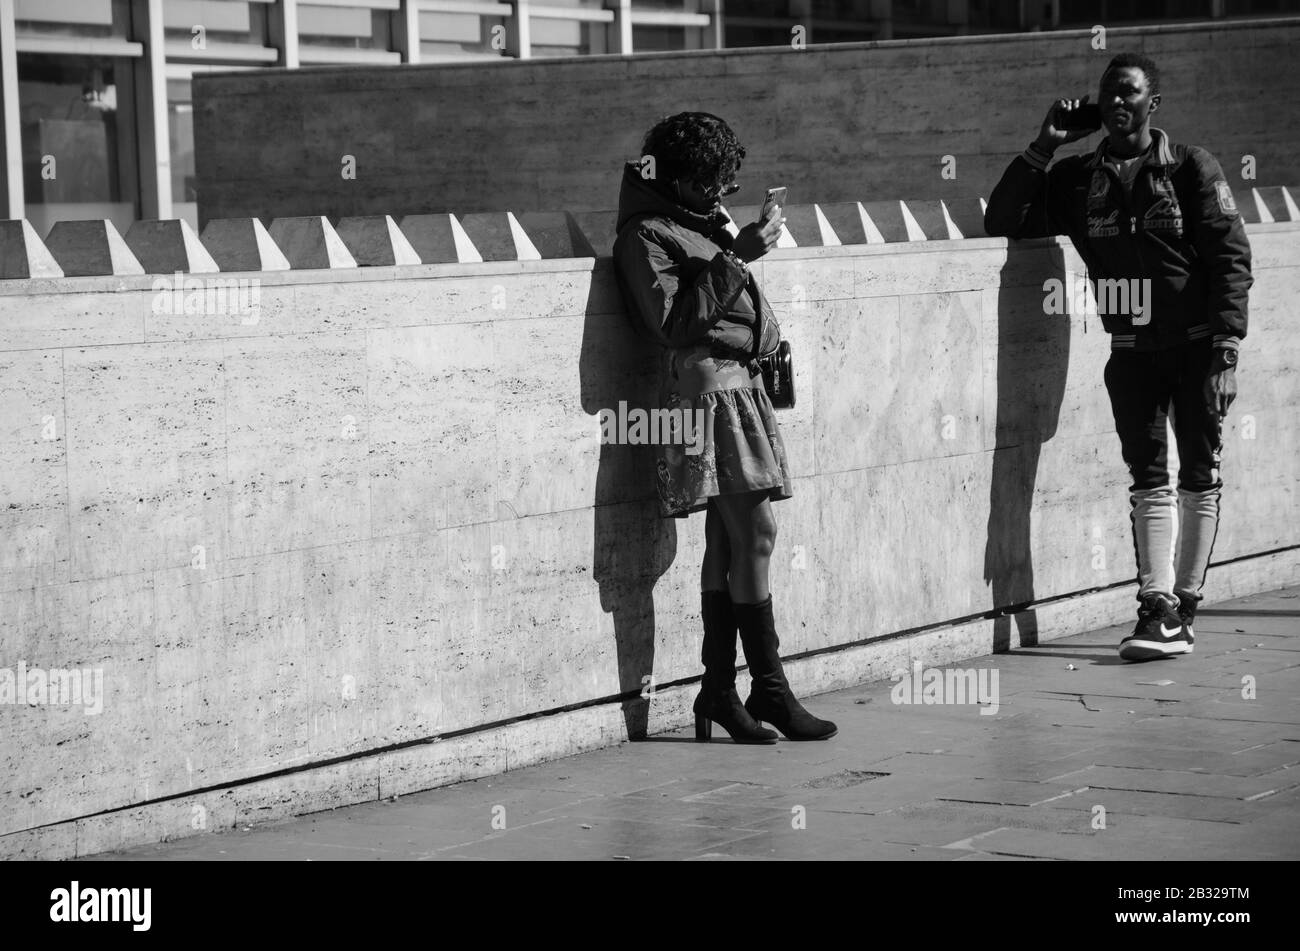 Roma, Italia. 23 Febbraio 2020. Un uomo nero e una donna nera con il loro smartphone. L'uomo sta parlando al telefono, la donna sta chiacchierando. Nero e. Foto Stock